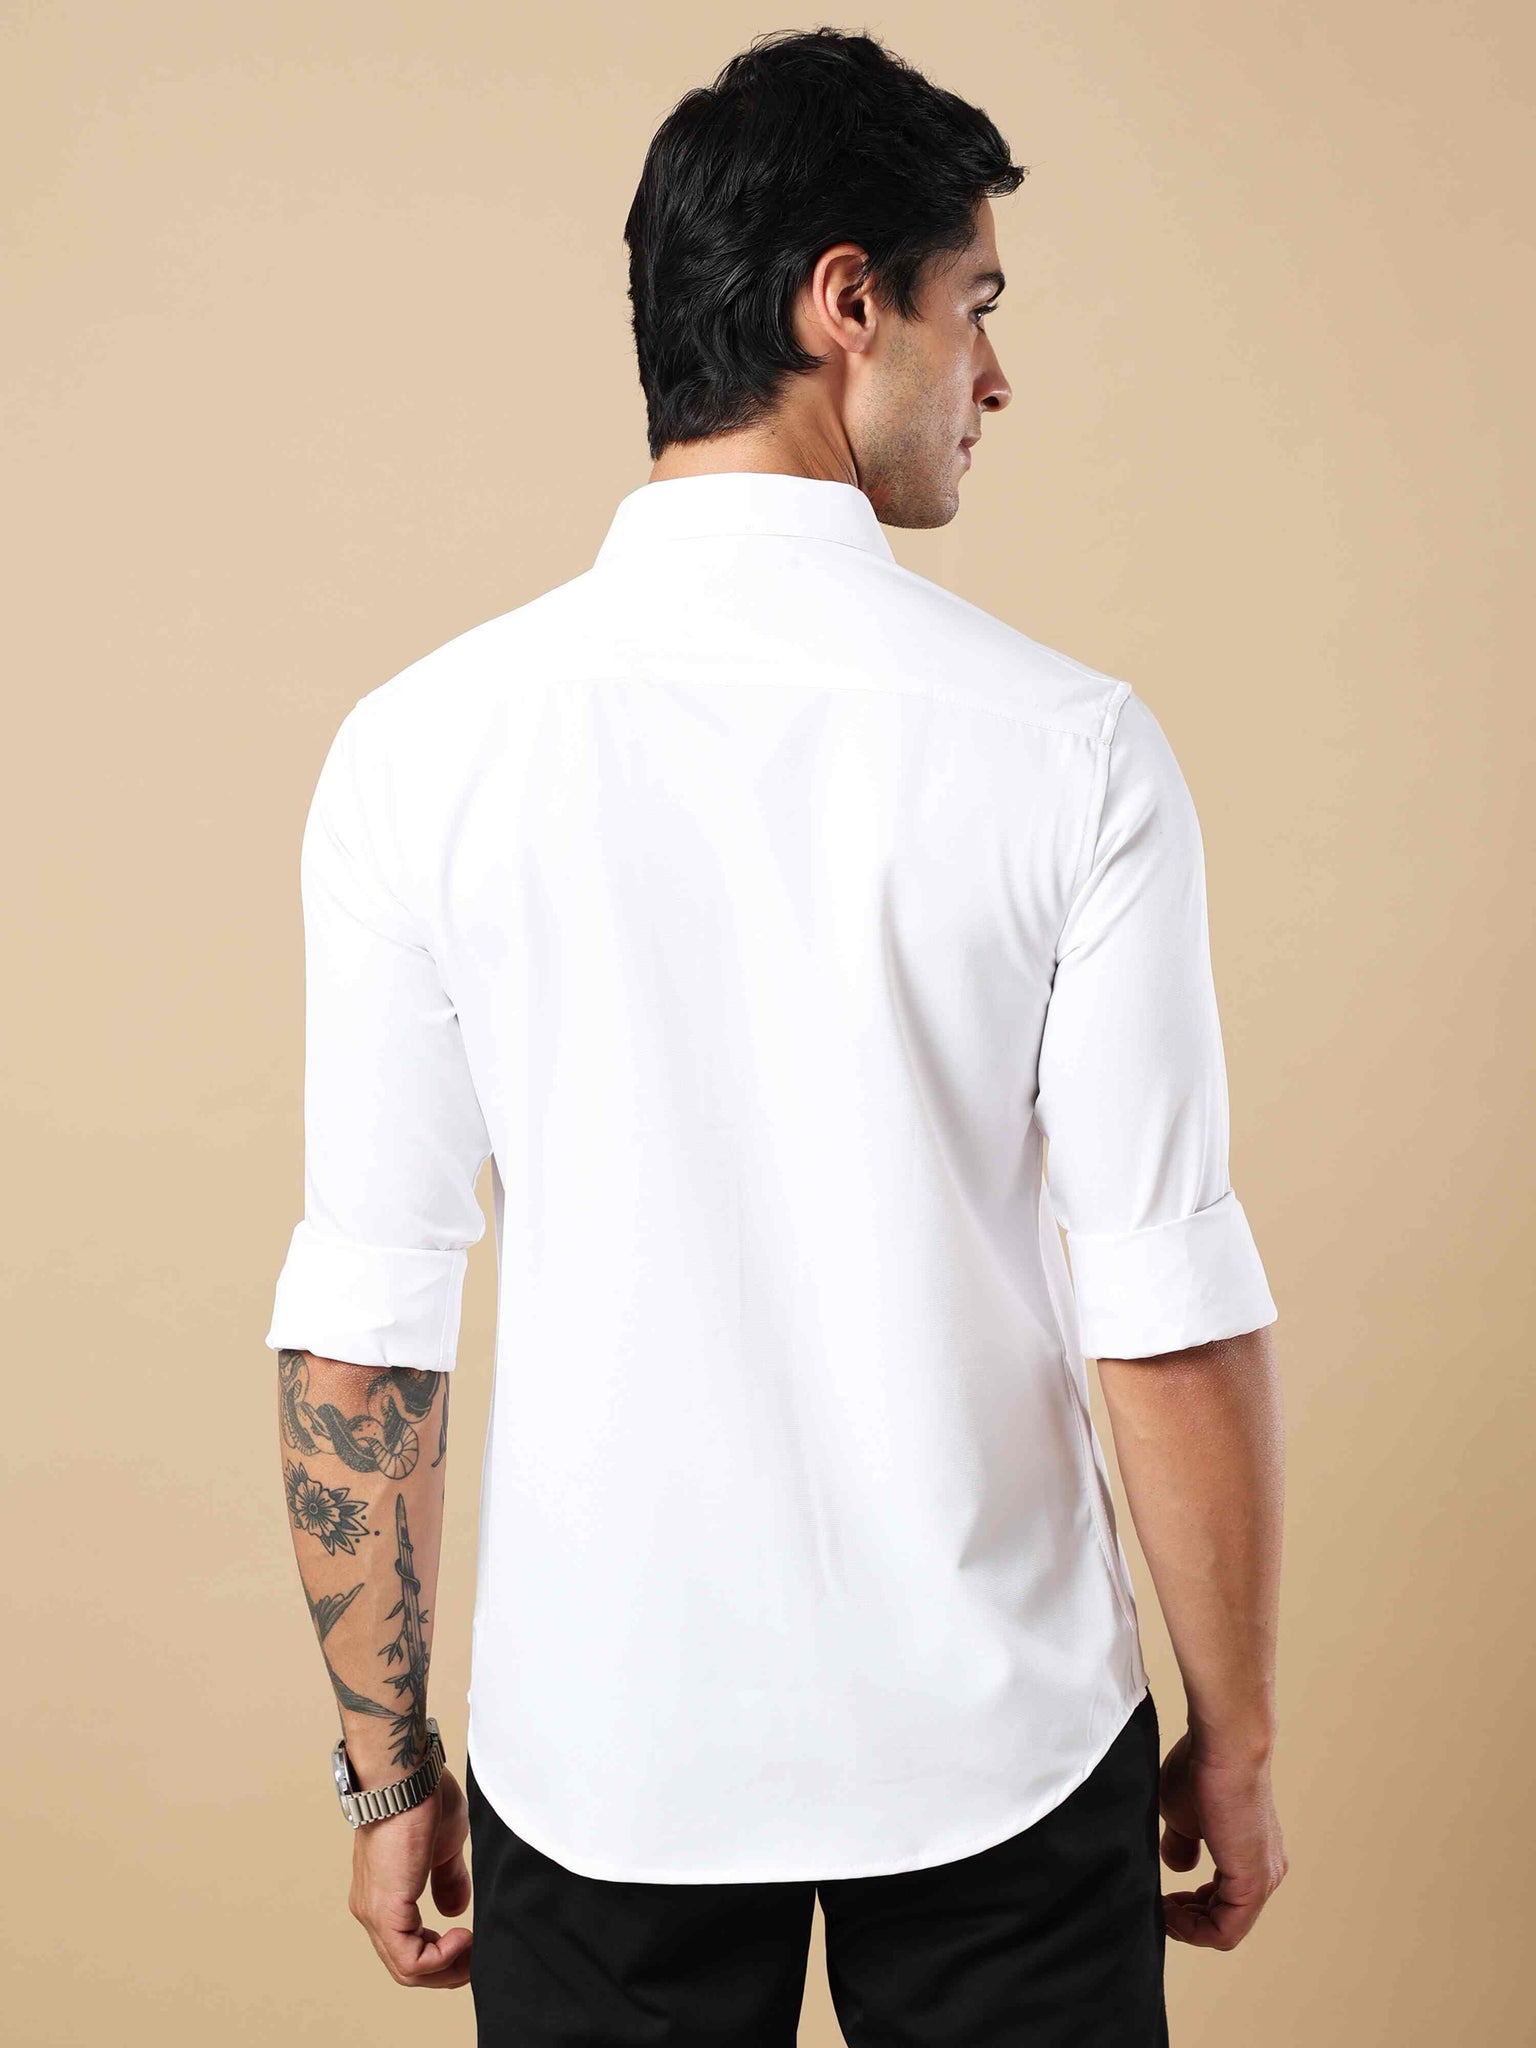 Neo Quad Foil Print White Shirt